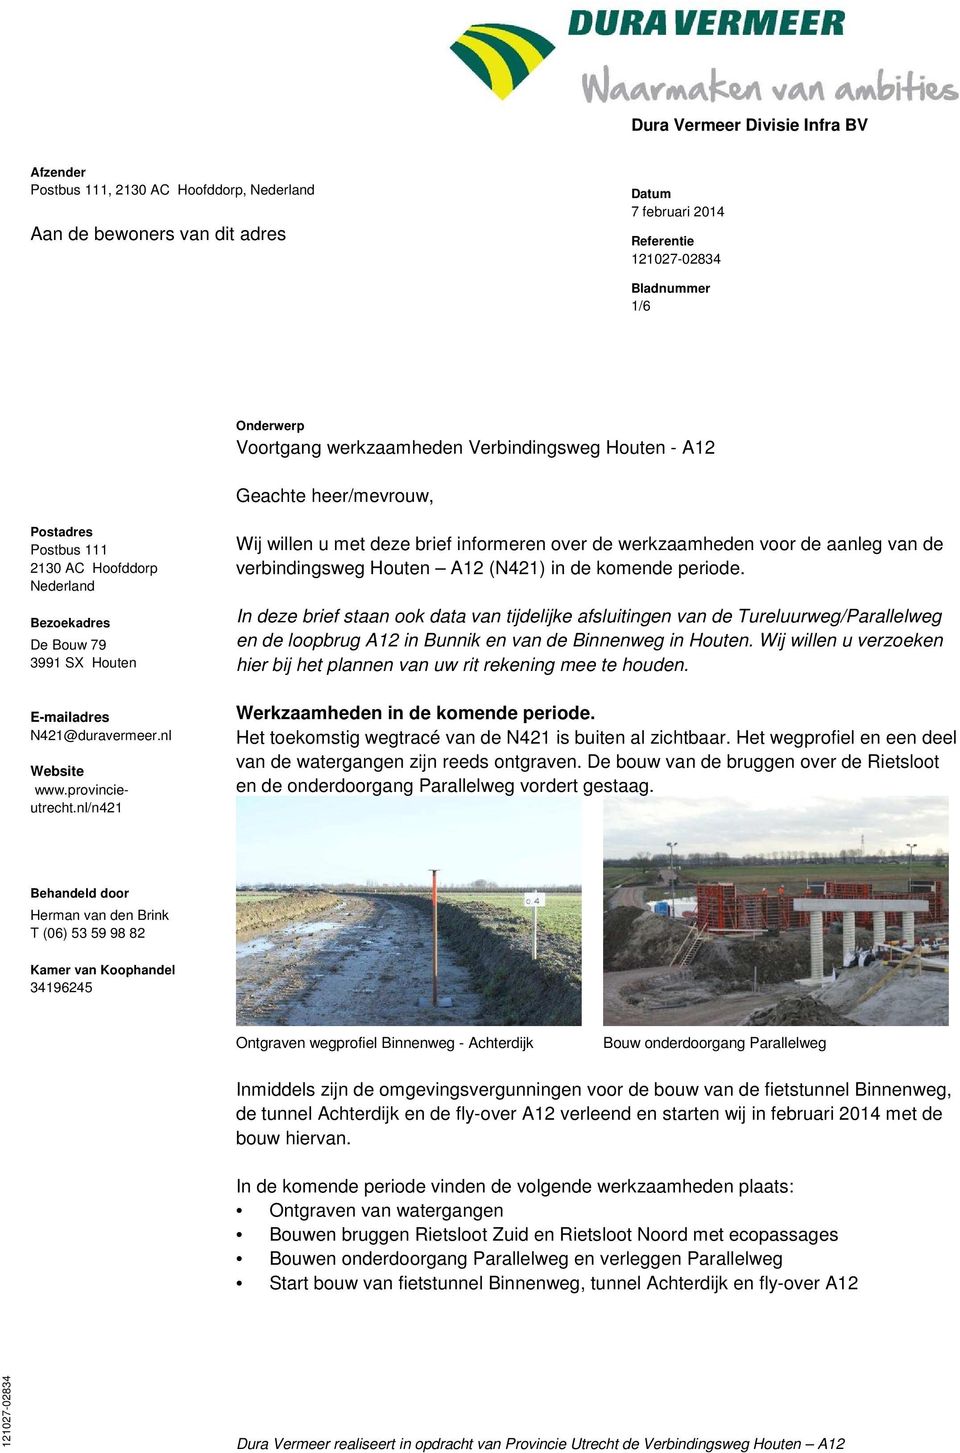 nl/n421 Wij willen u met deze brief informeren over de werkzaamheden voor de aanleg van de verbindingsweg Houten A12 (N421) in de komende periode.